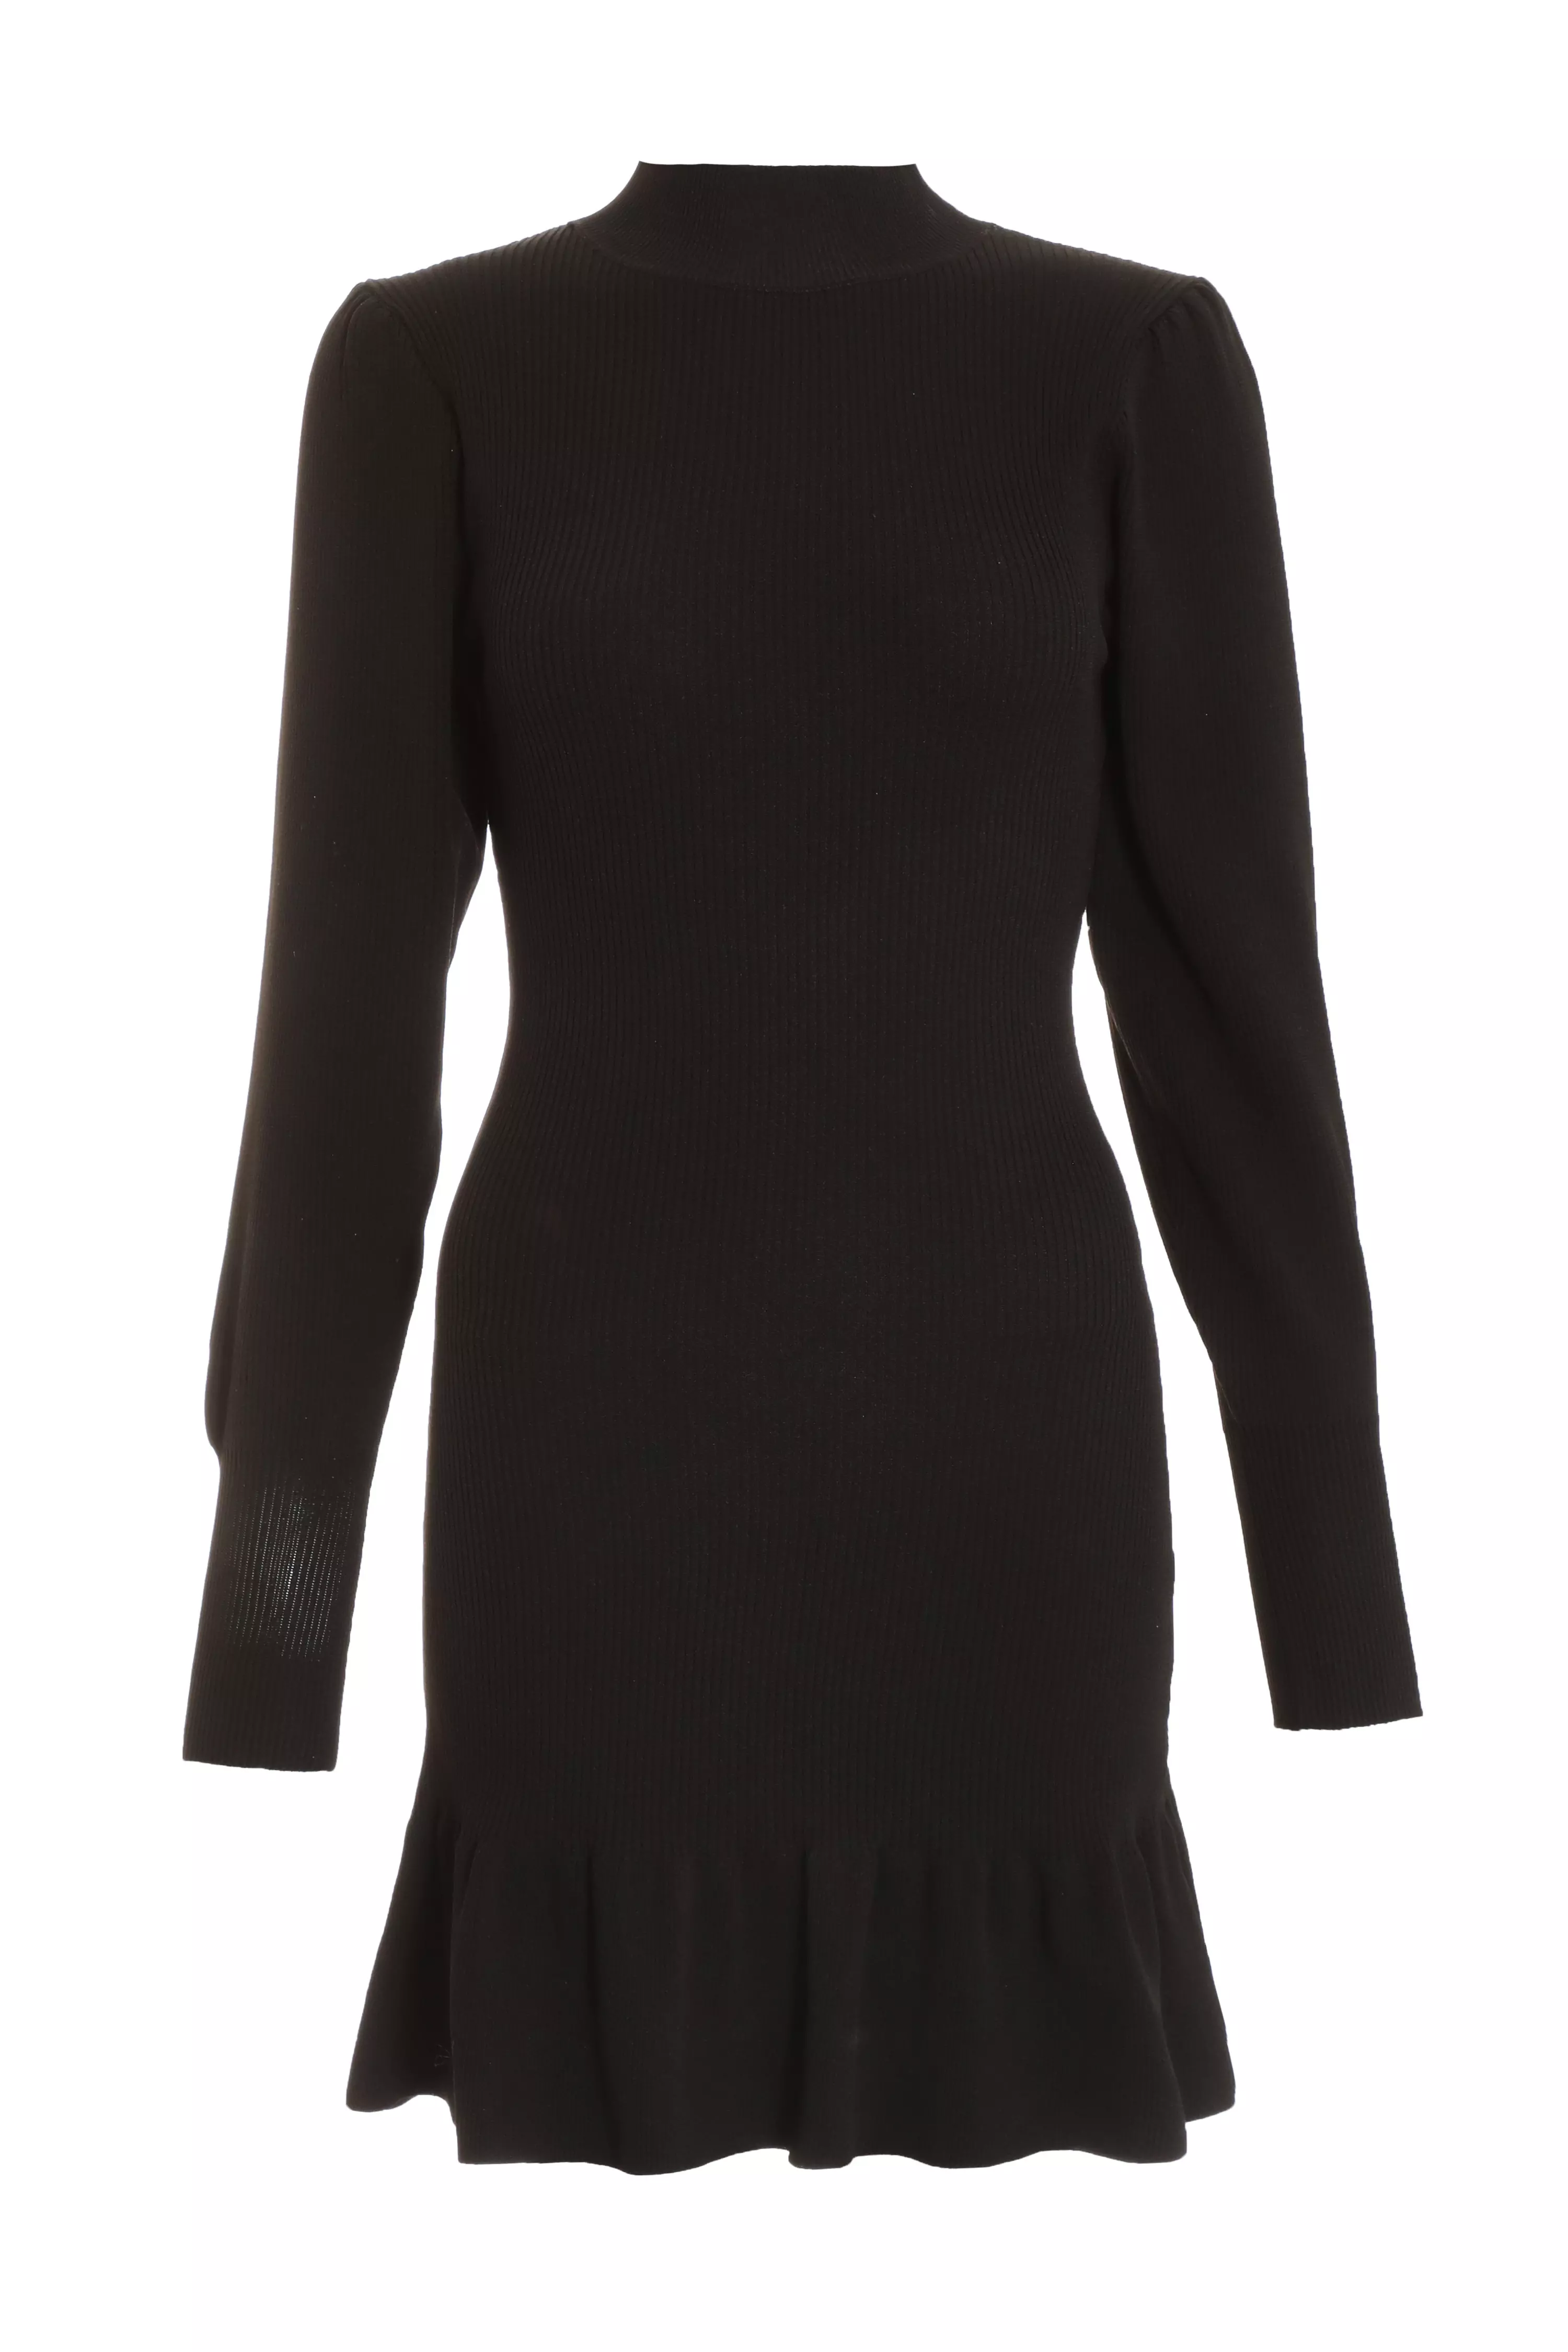 Black Knitted Frill Hem Jumper Dress